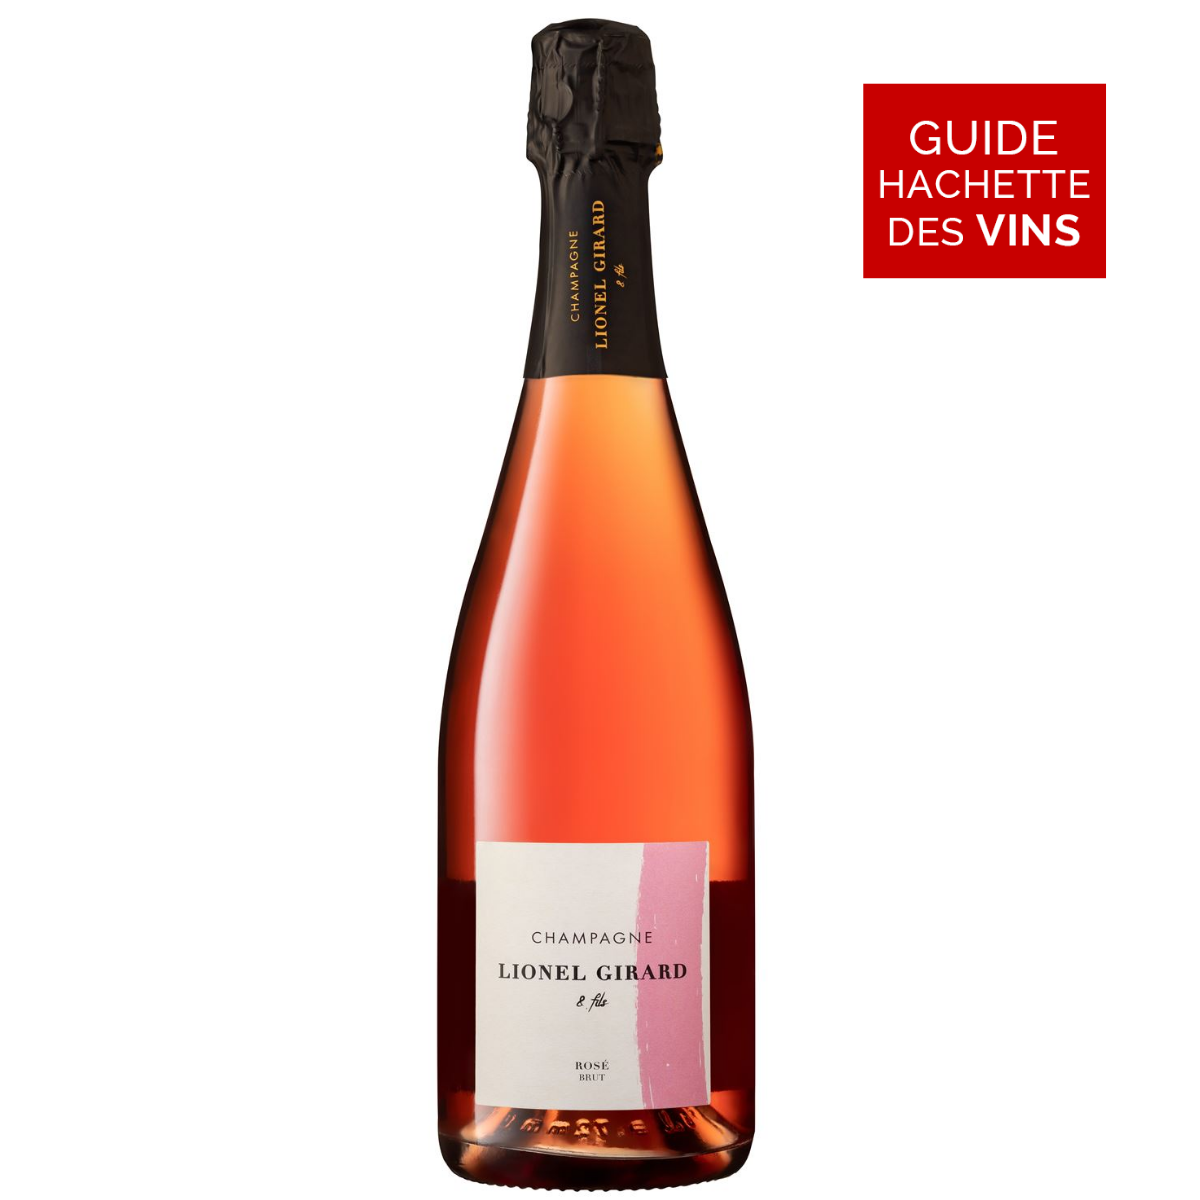 Champagne Lionel Girard rosé